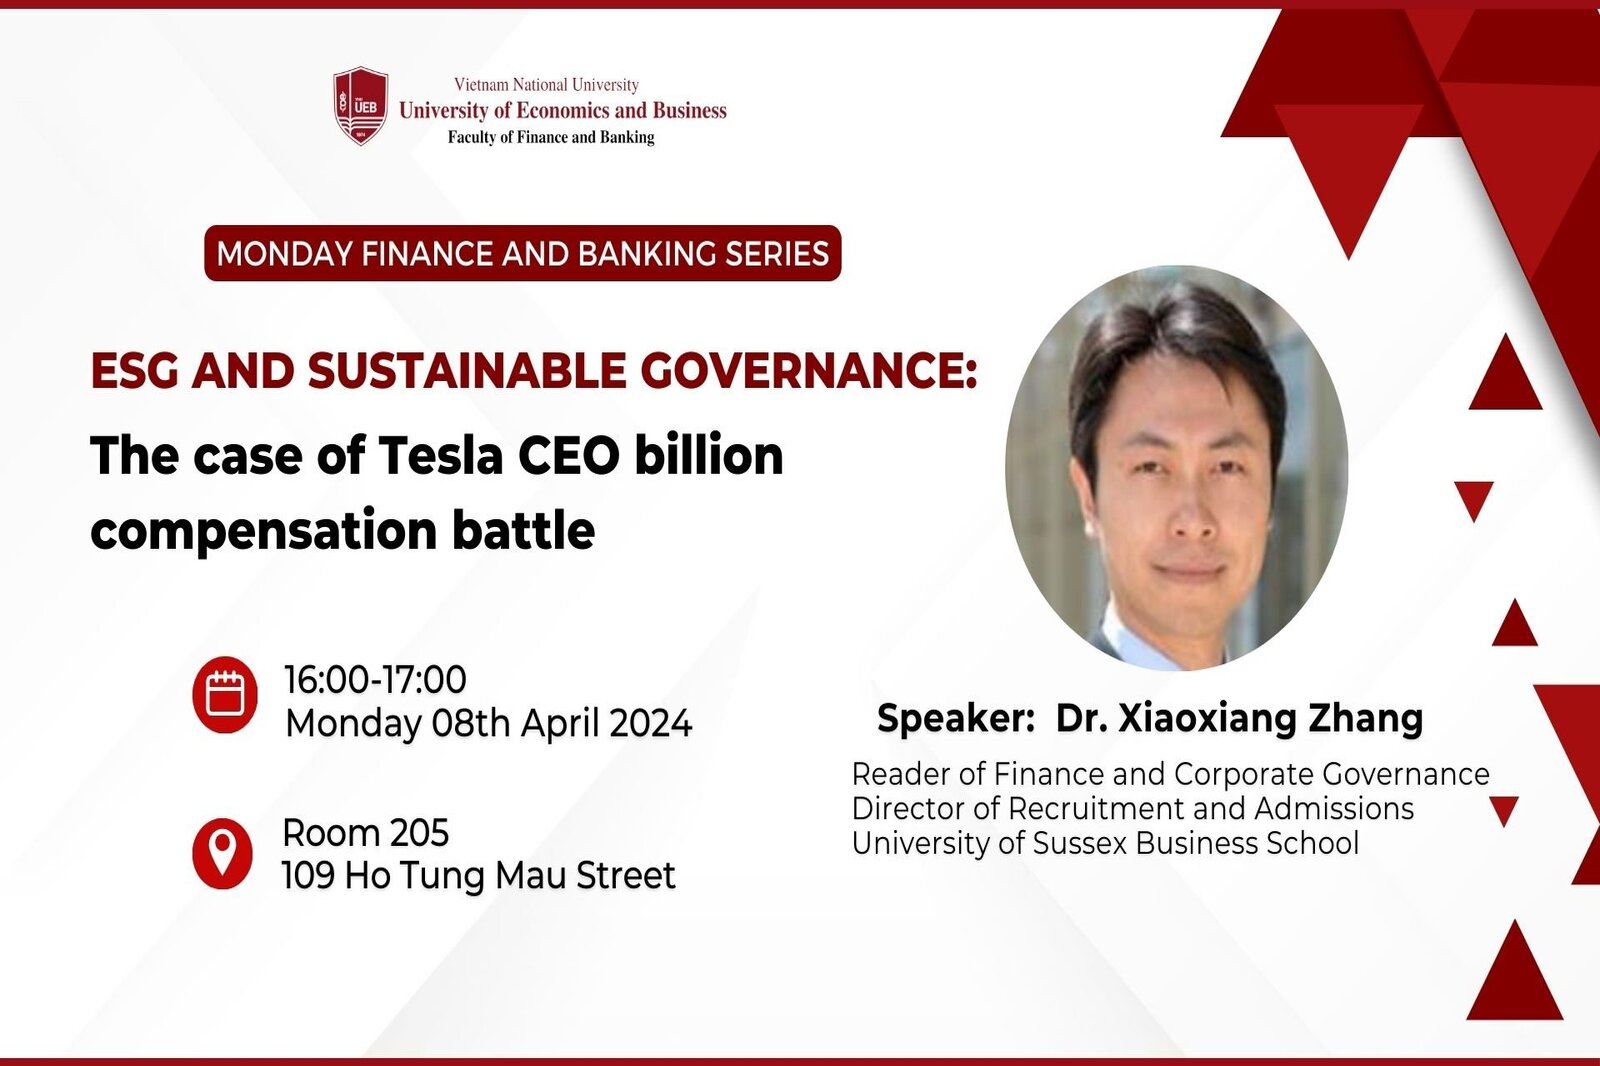 Thư mời tham dự Tọa đàm Monday Finance And Banking Series kết hợp Guest Lecture học phần Financial Markets and Institutions tháng 4/2023